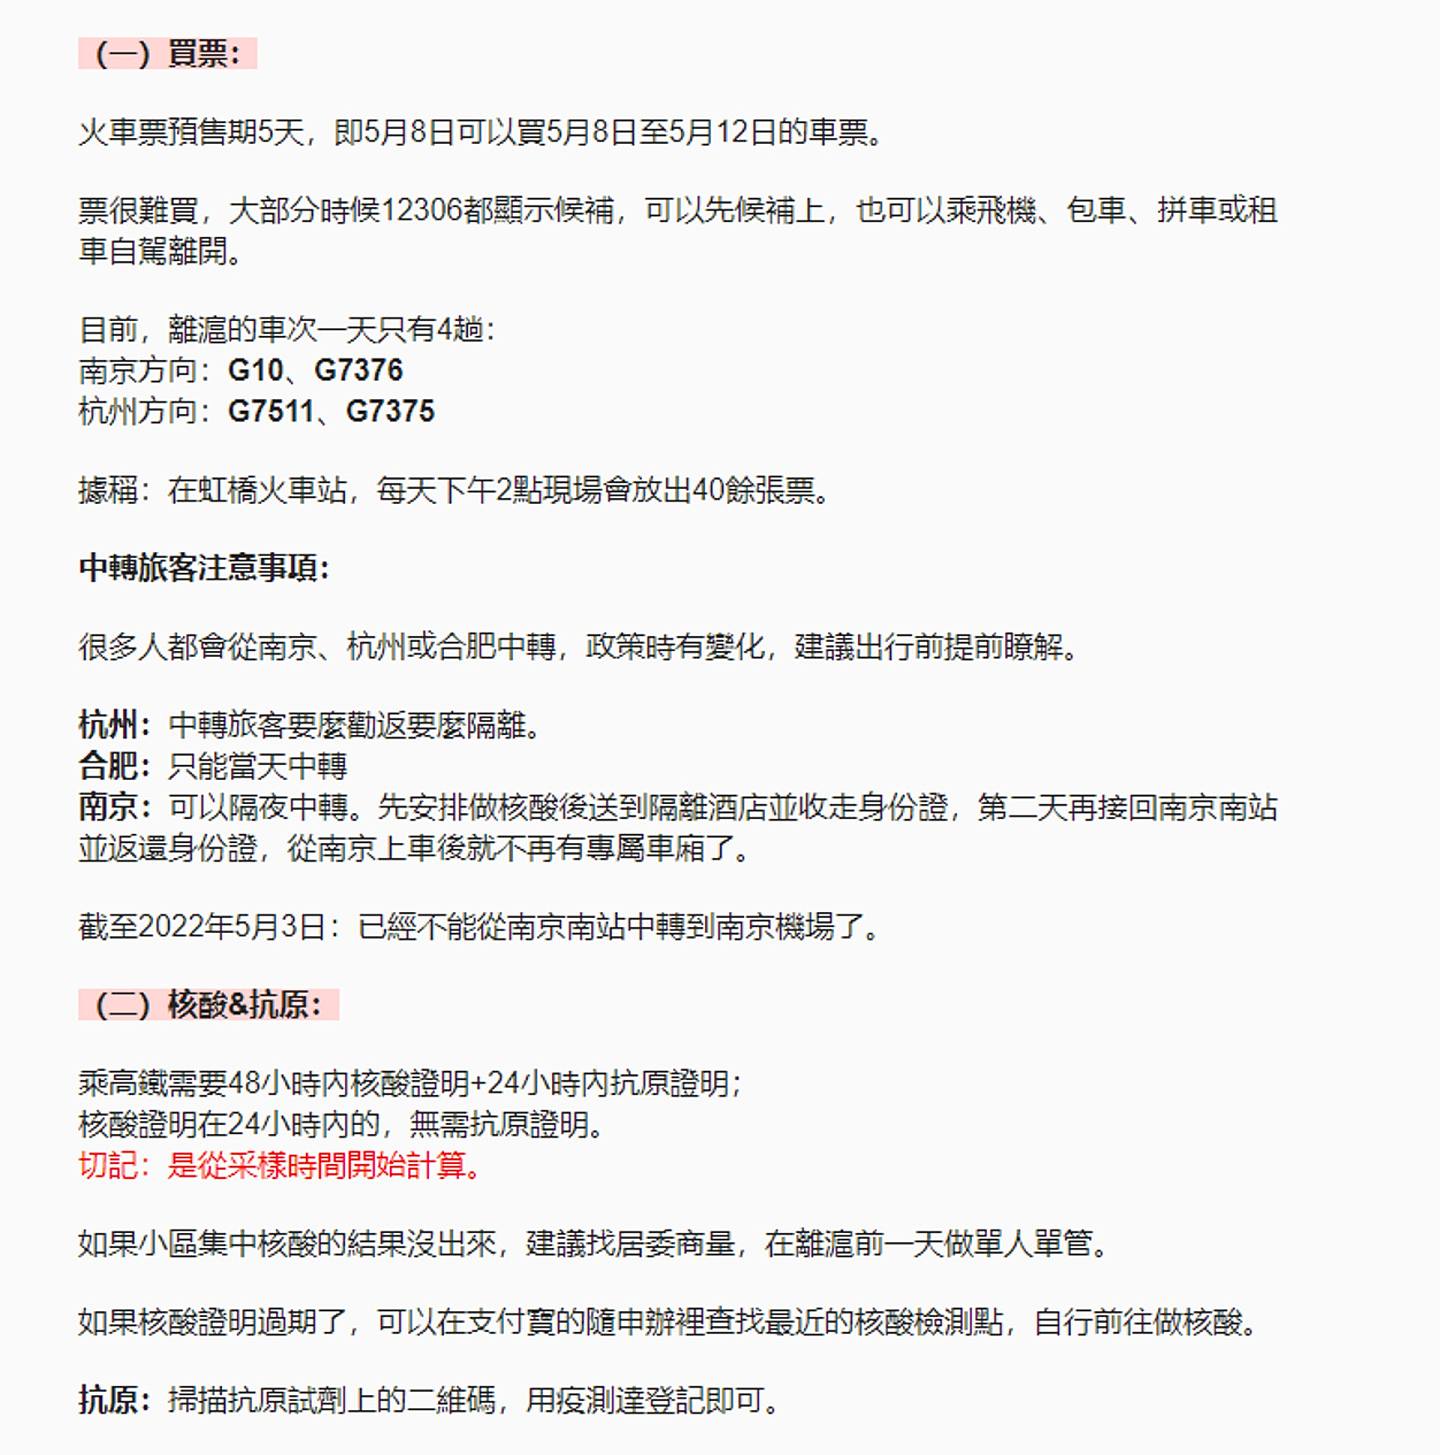 该指南详列要离开上海的步骤和申请程序，内容由网民自身经历或官方渠道整理。 （微信公众号＠上海文艺青年）